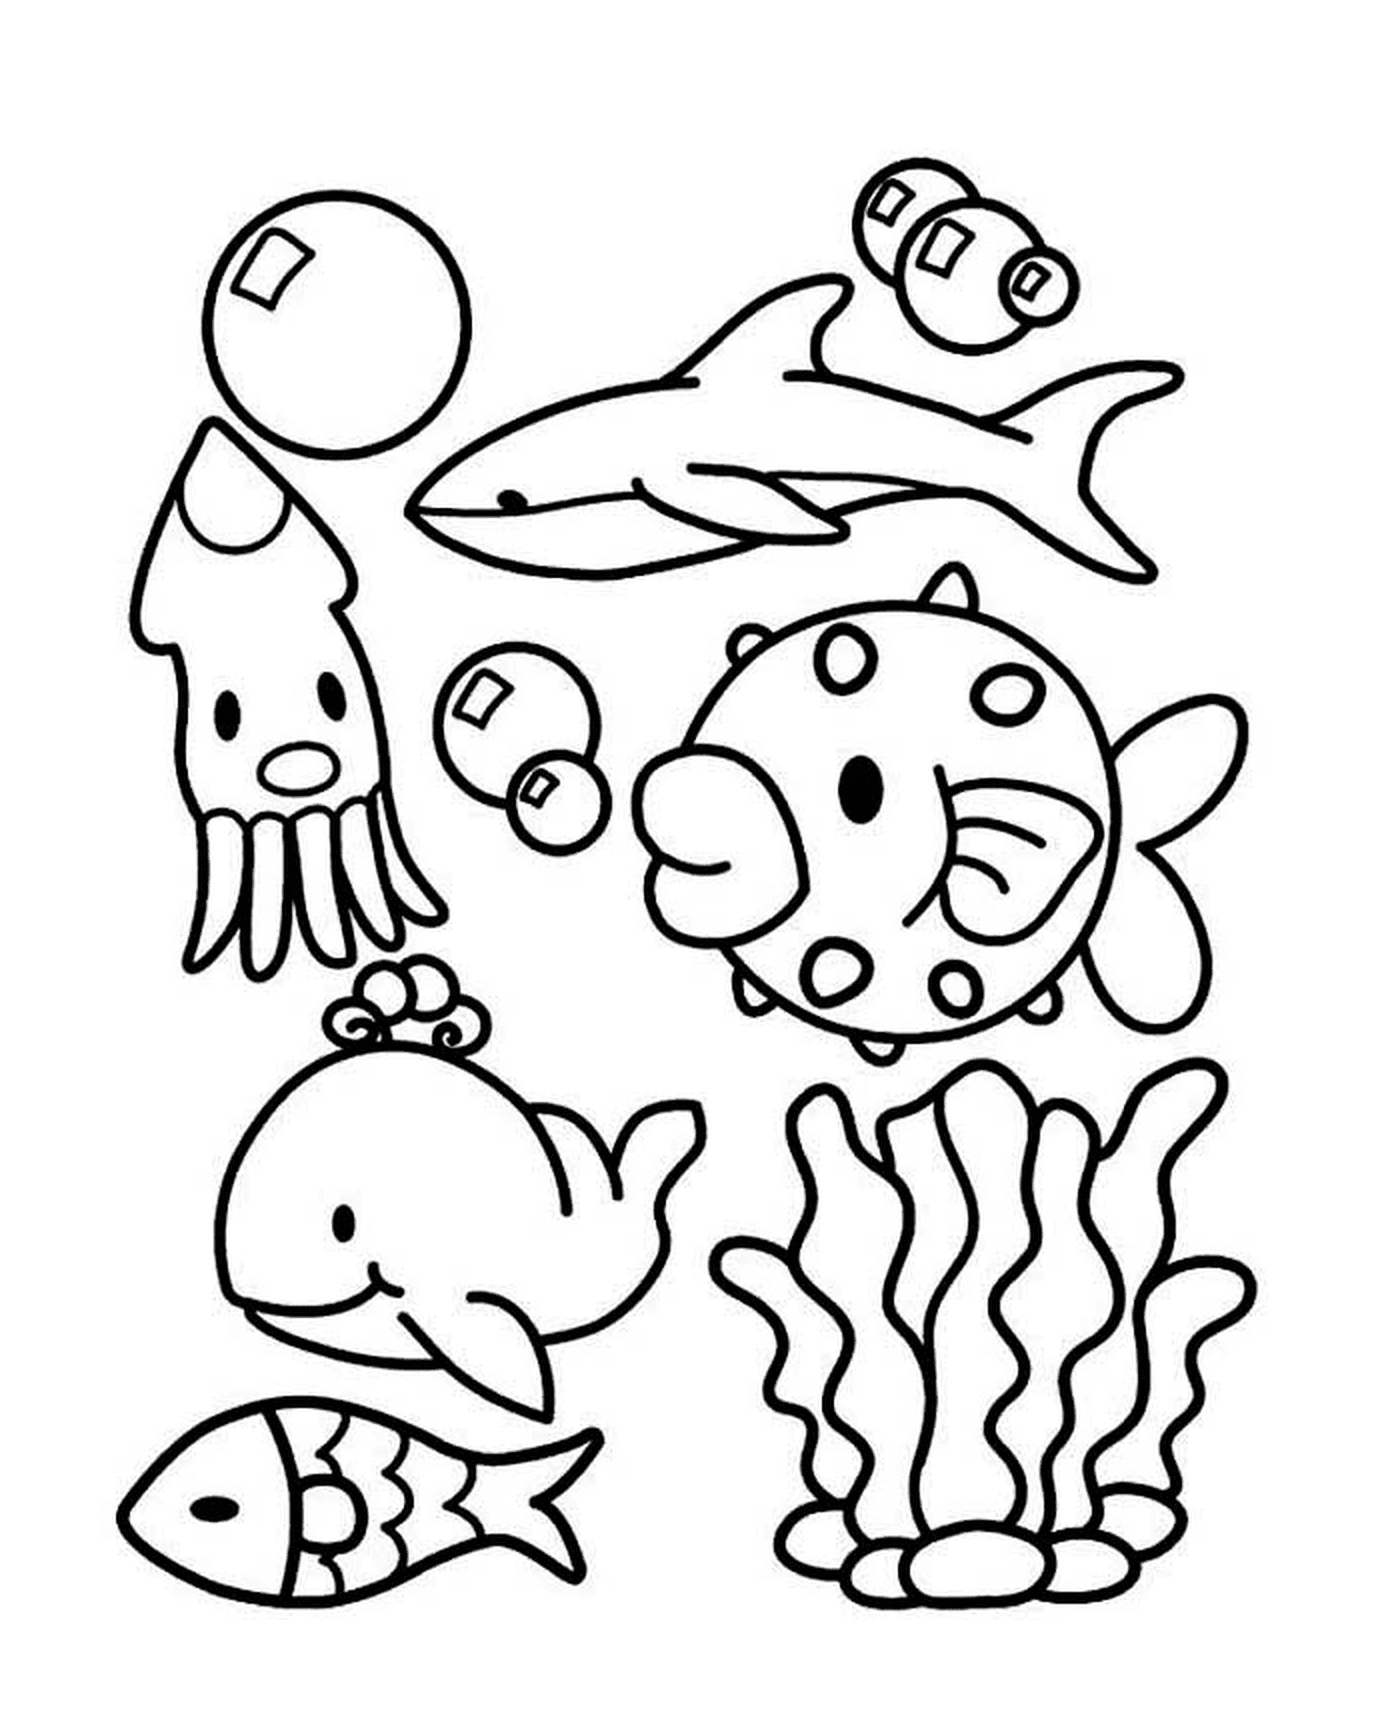  Un grupo de animales marinos en el agua 